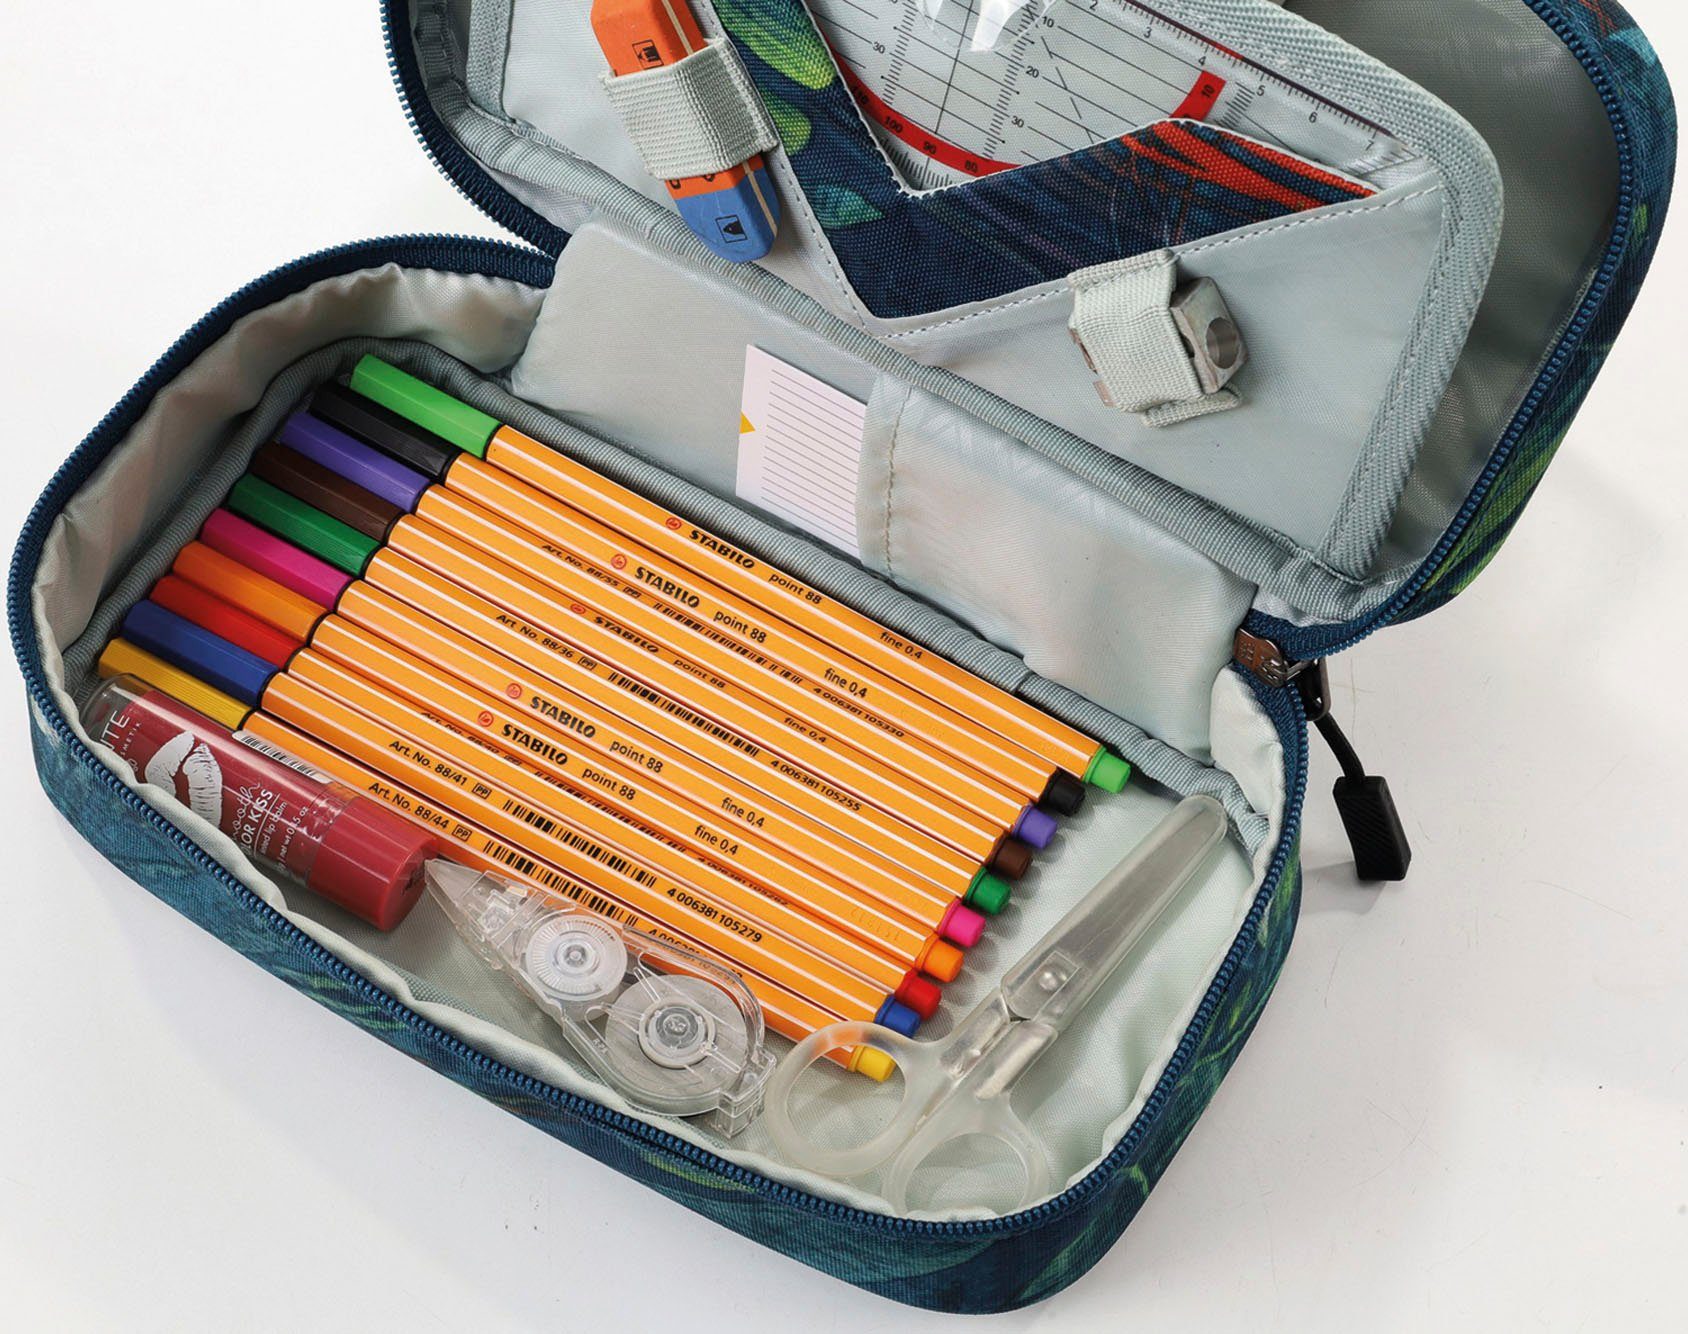 NITRO Federtasche Pencil Case Tropical XL